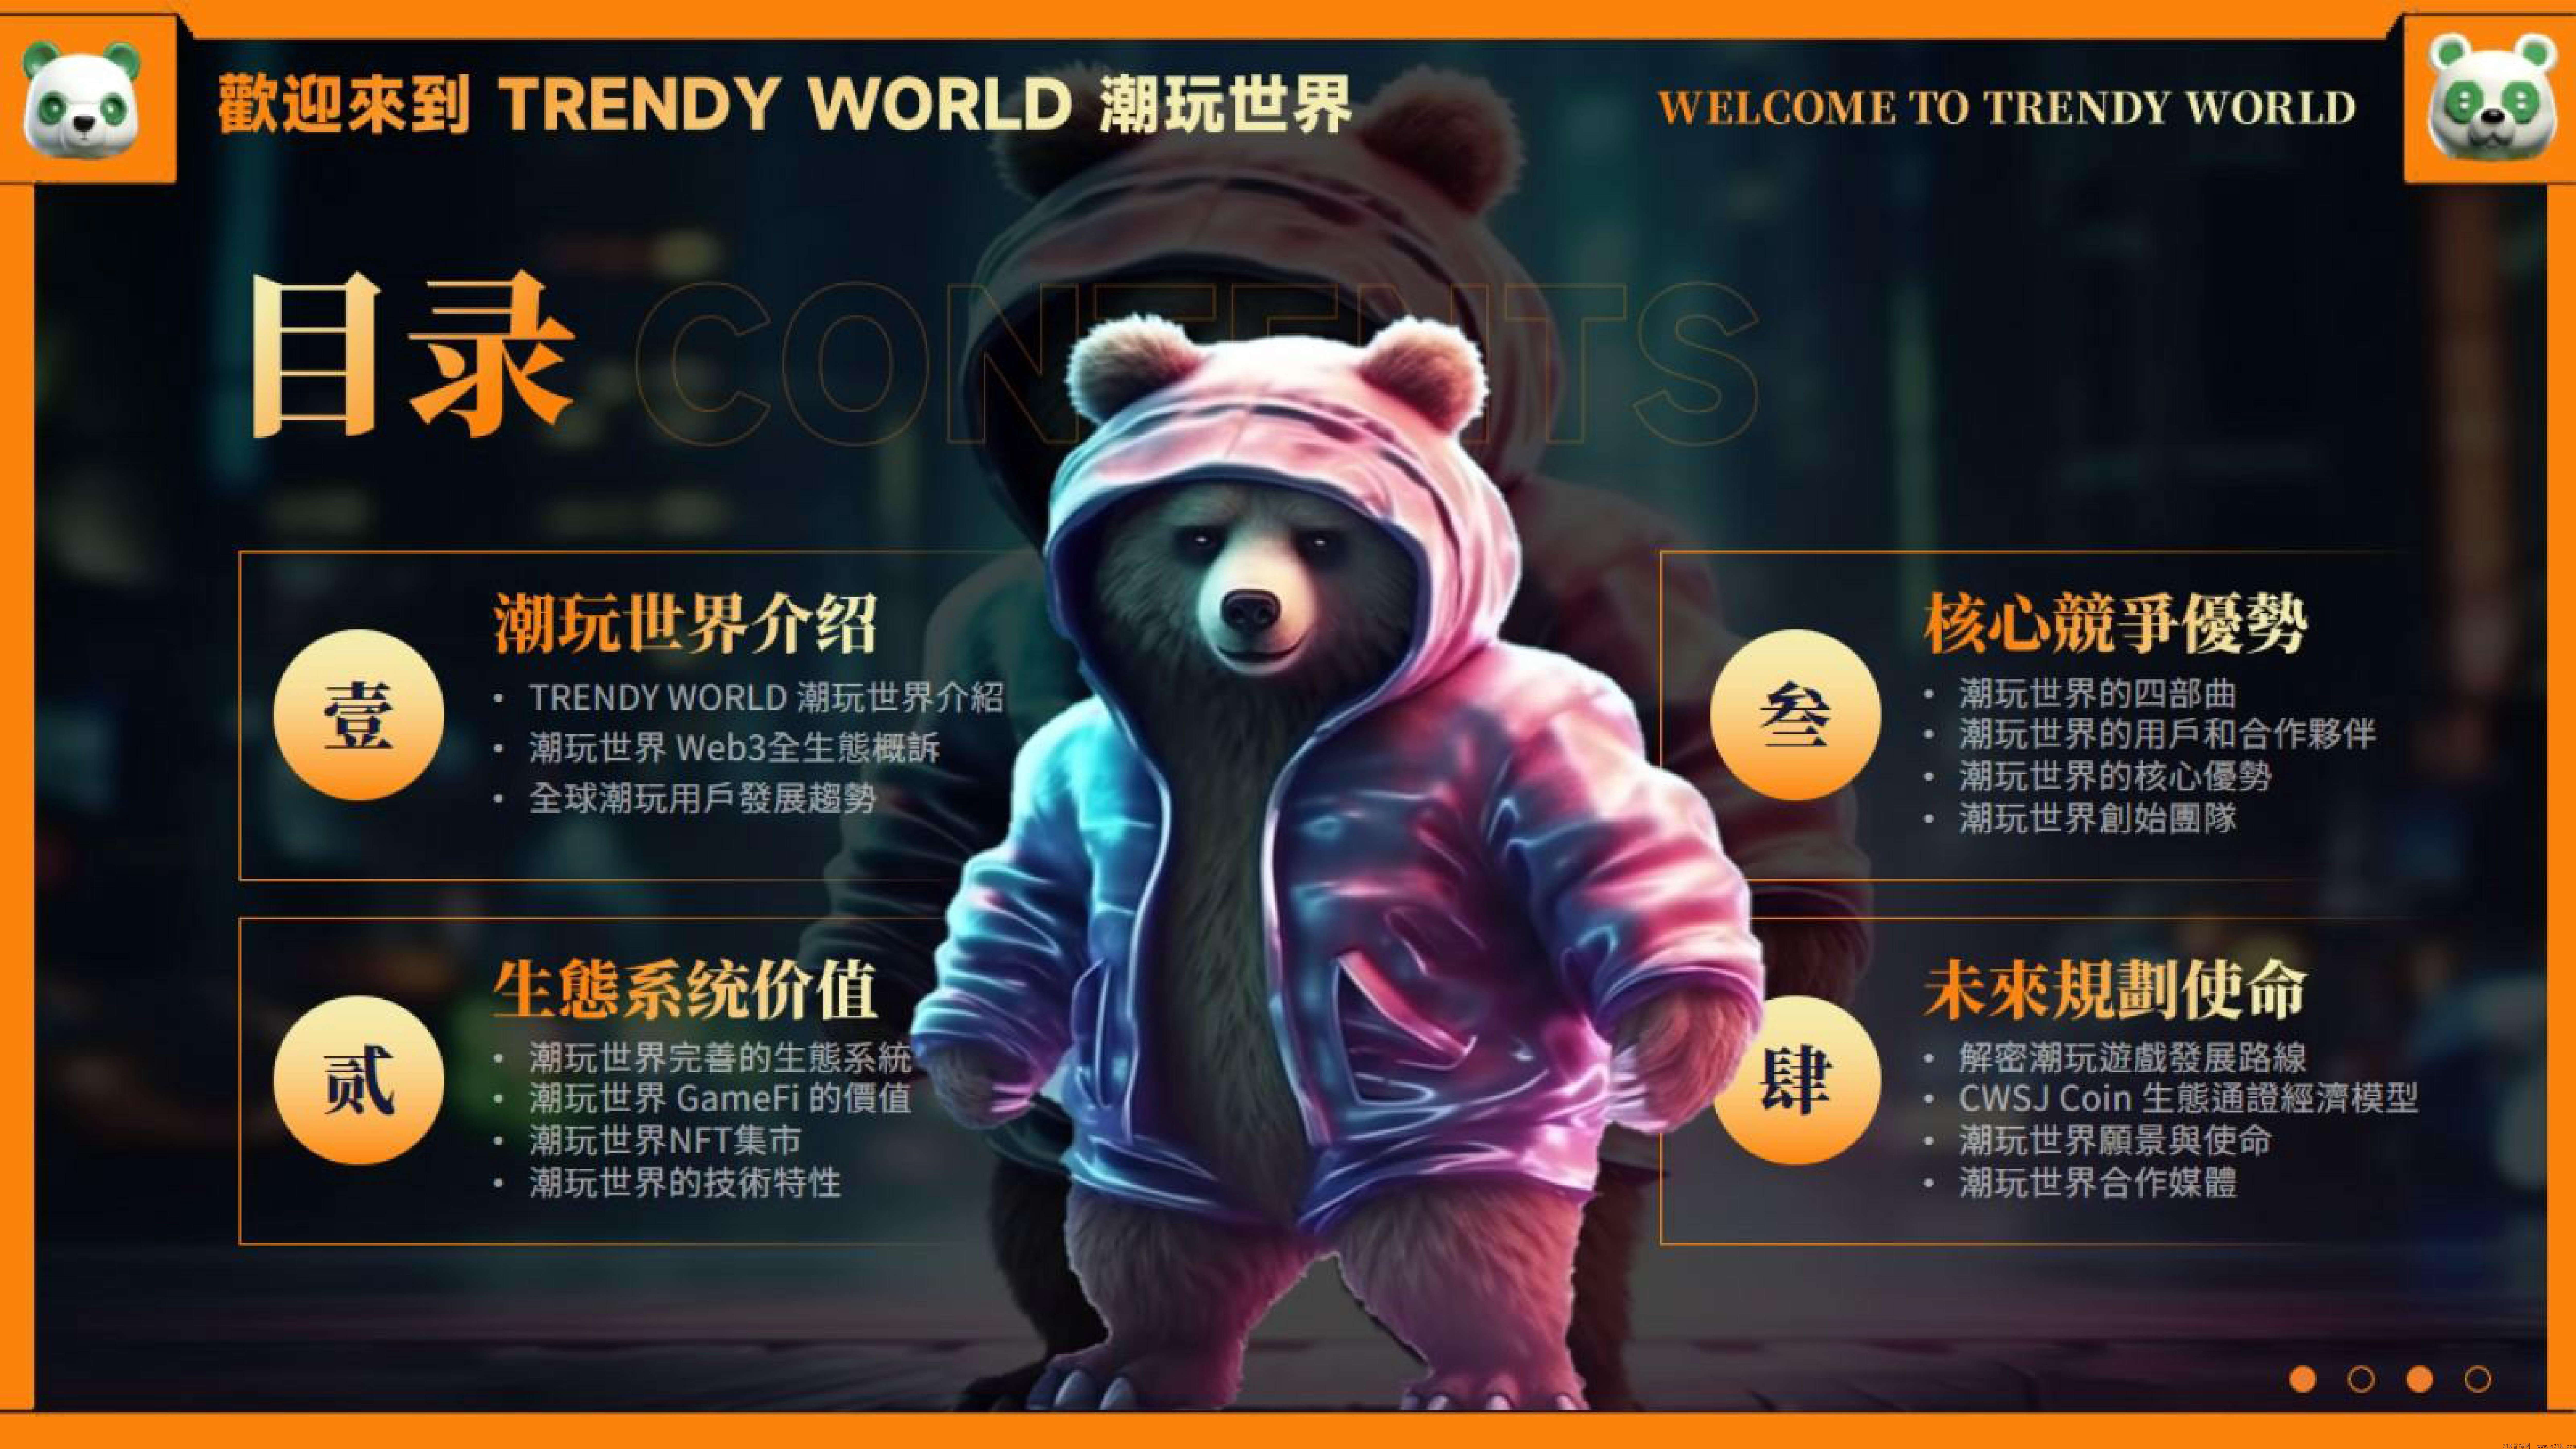 潮玩世界泰达熊，官方排线对接扶持玩家赠送渠道收益，可以零撸玩，接待考察